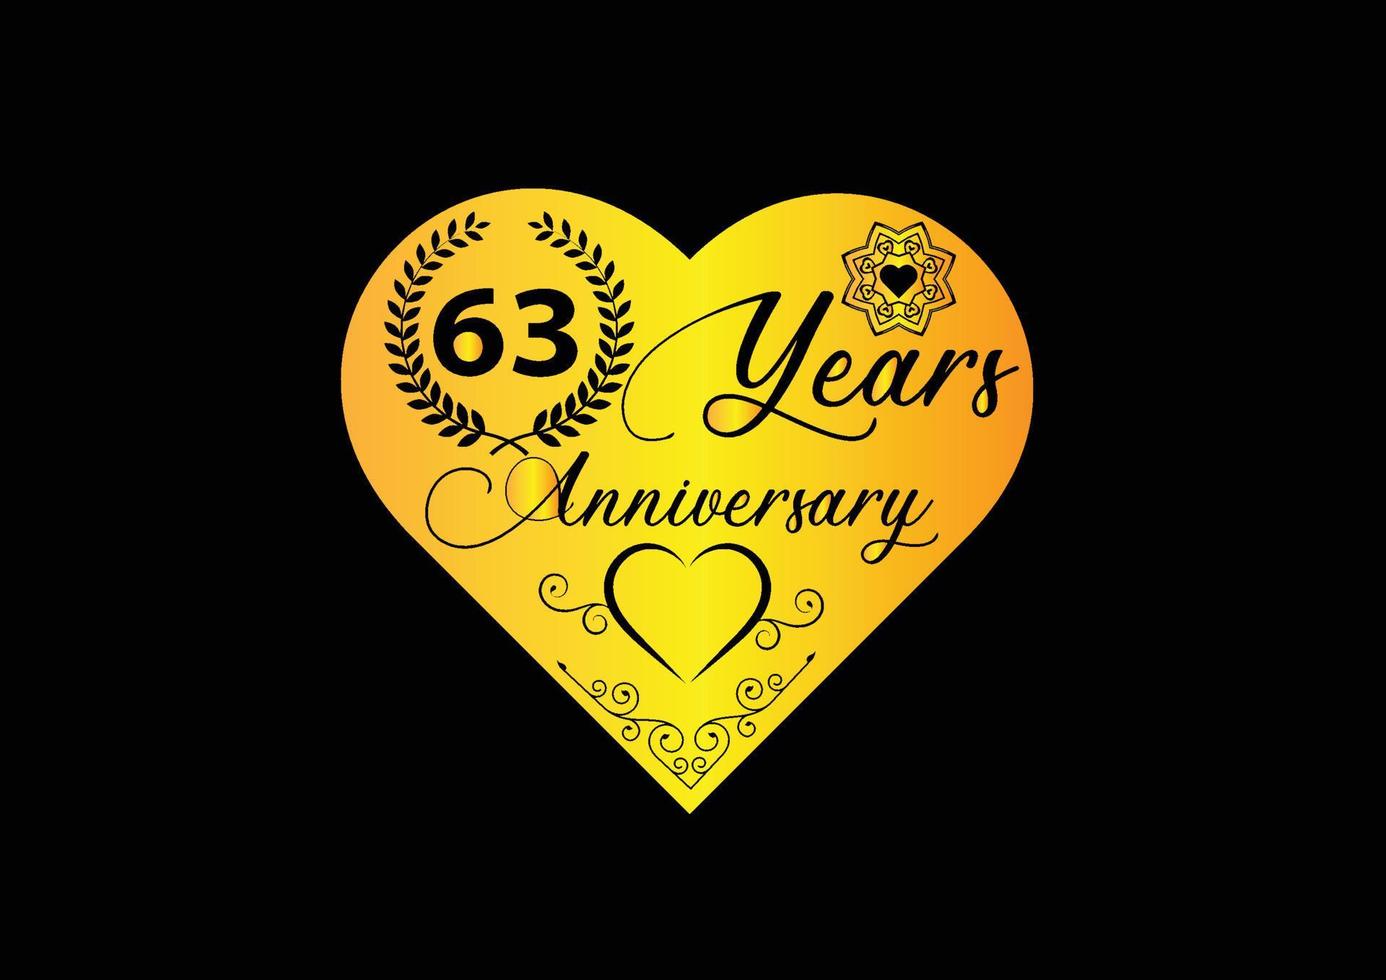 Célébration d'anniversaire de 63 ans avec logo d'amour et conception d'icônes vecteur